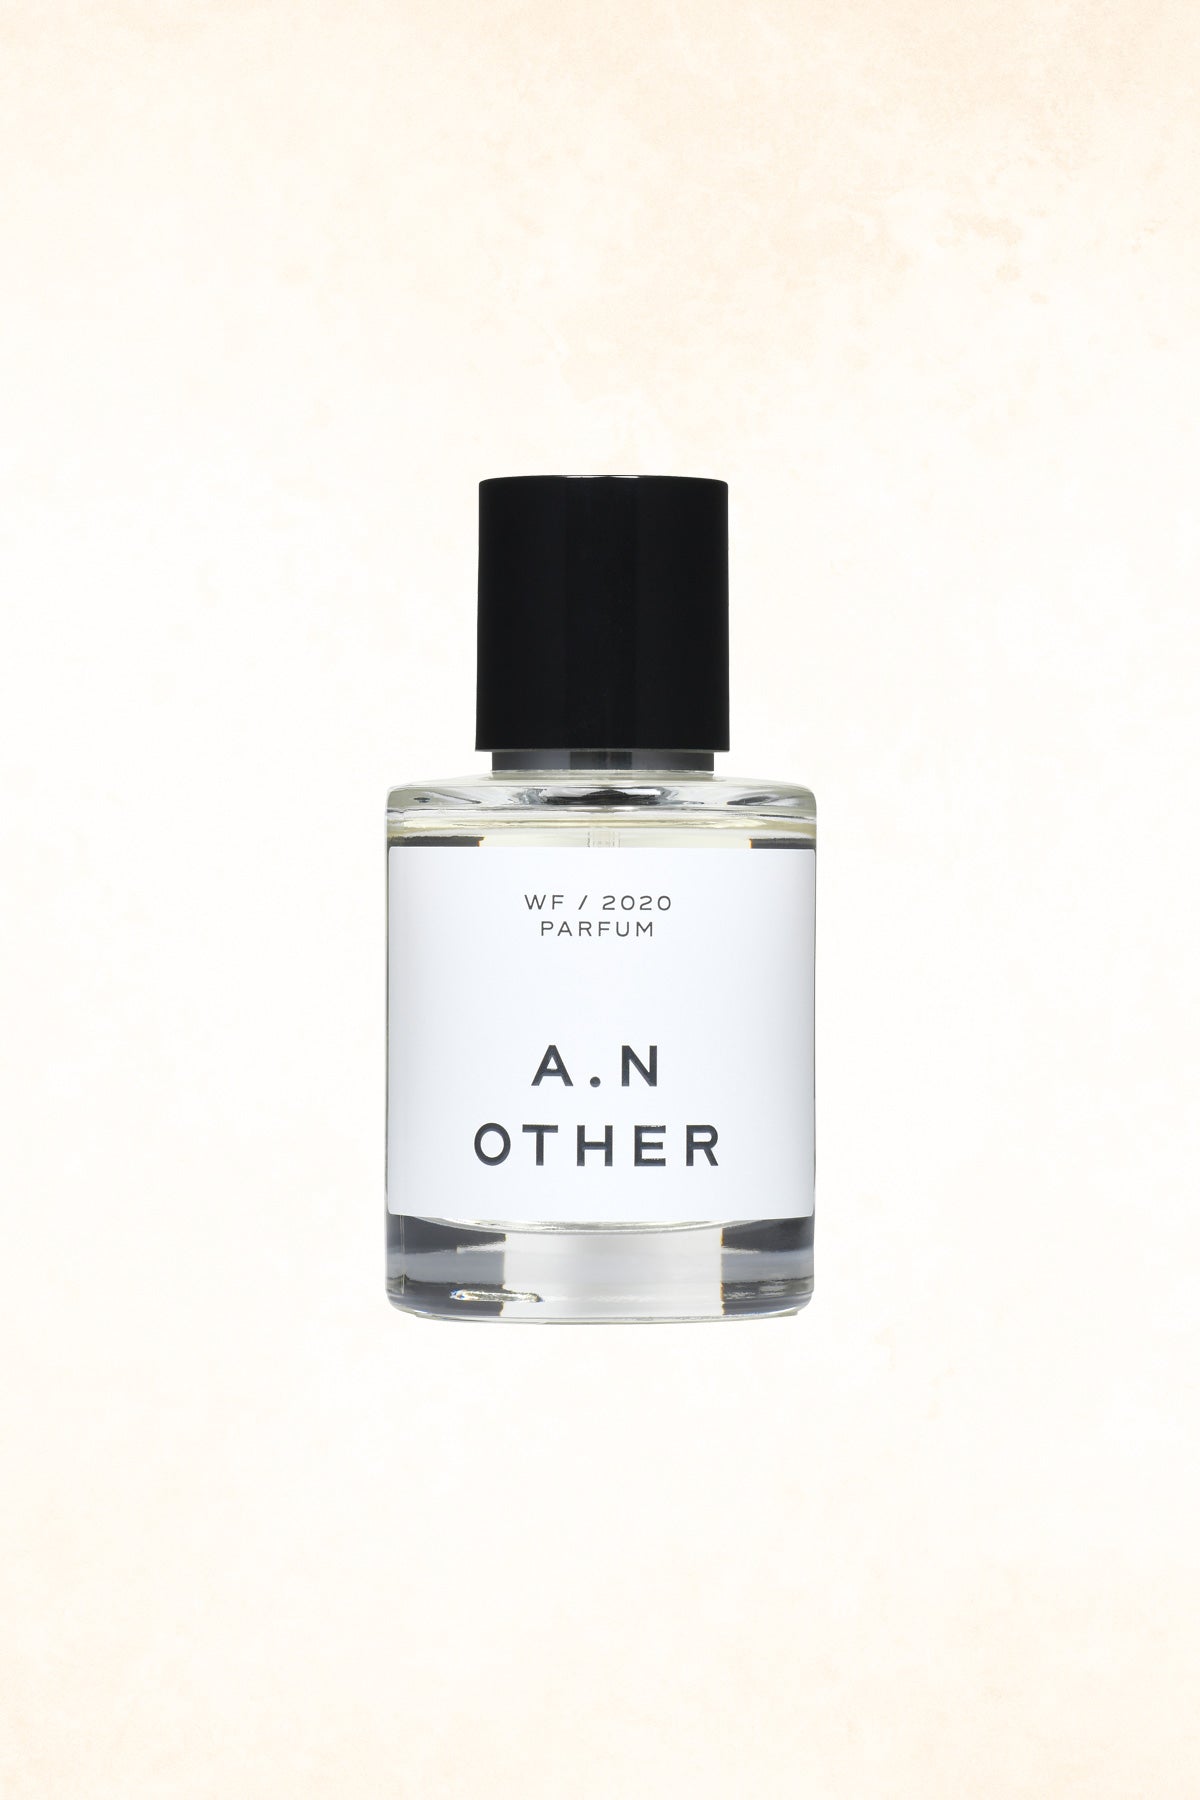 A.N OTHER – WF/2020 Parfum - 50 ml